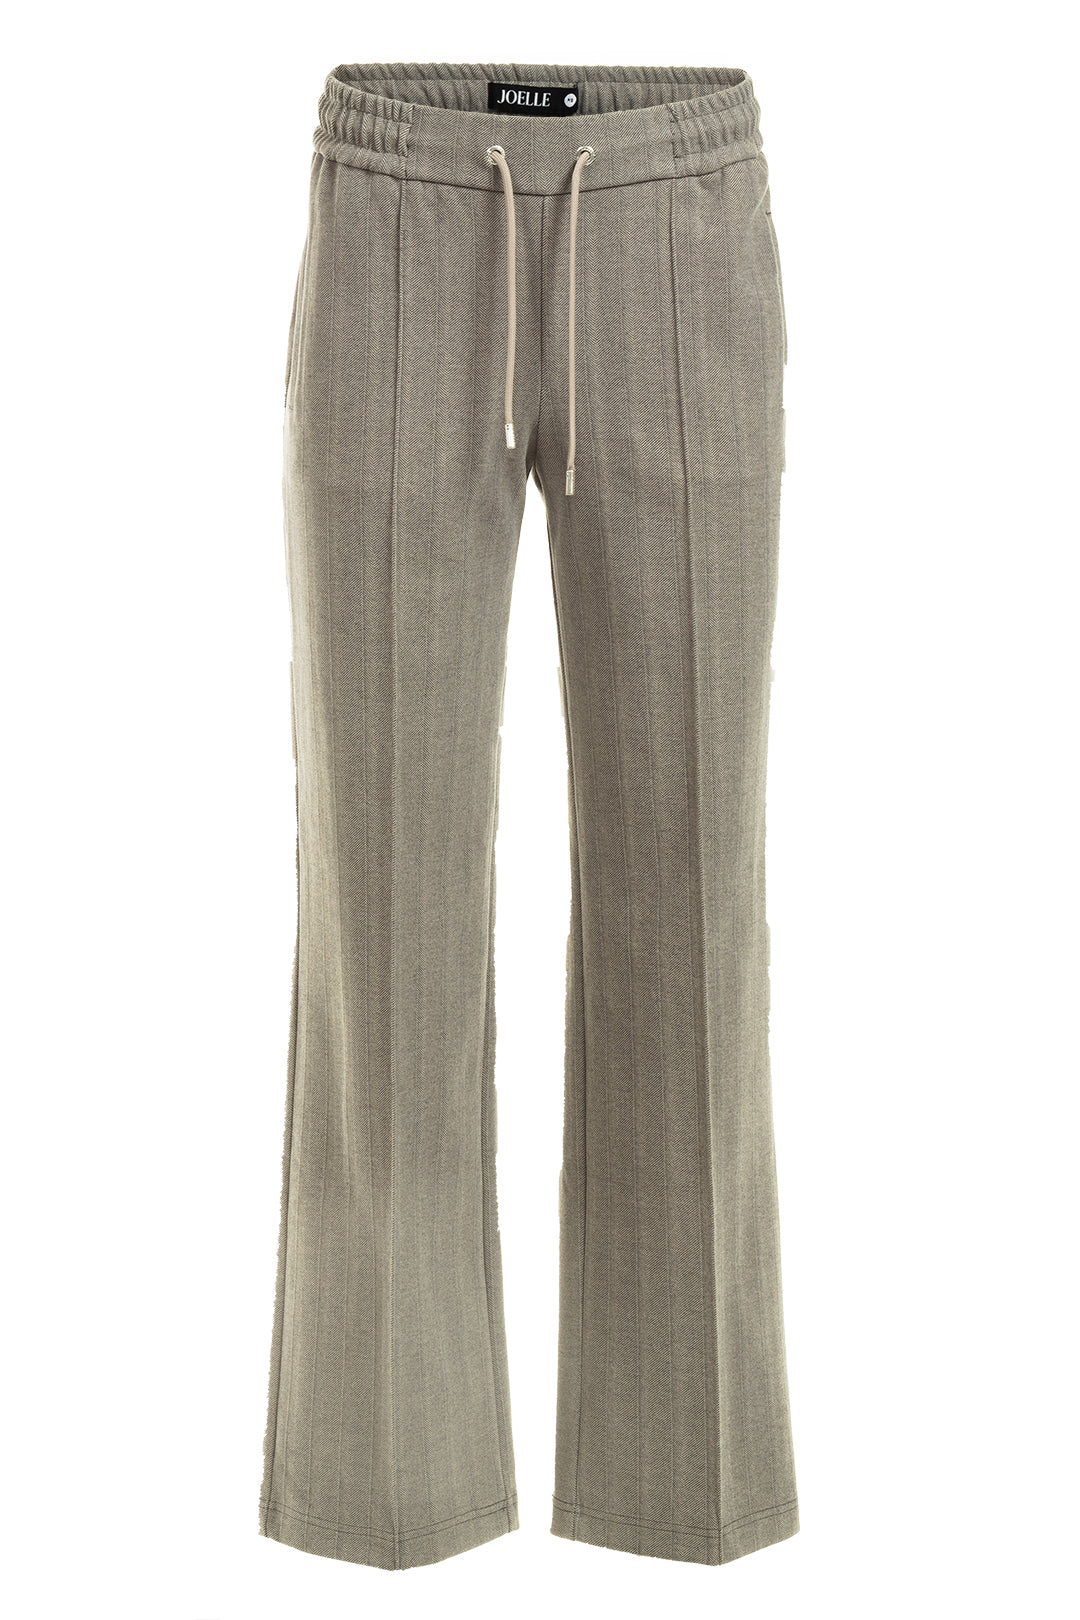 Gray herringbone patterned pants | Barlee